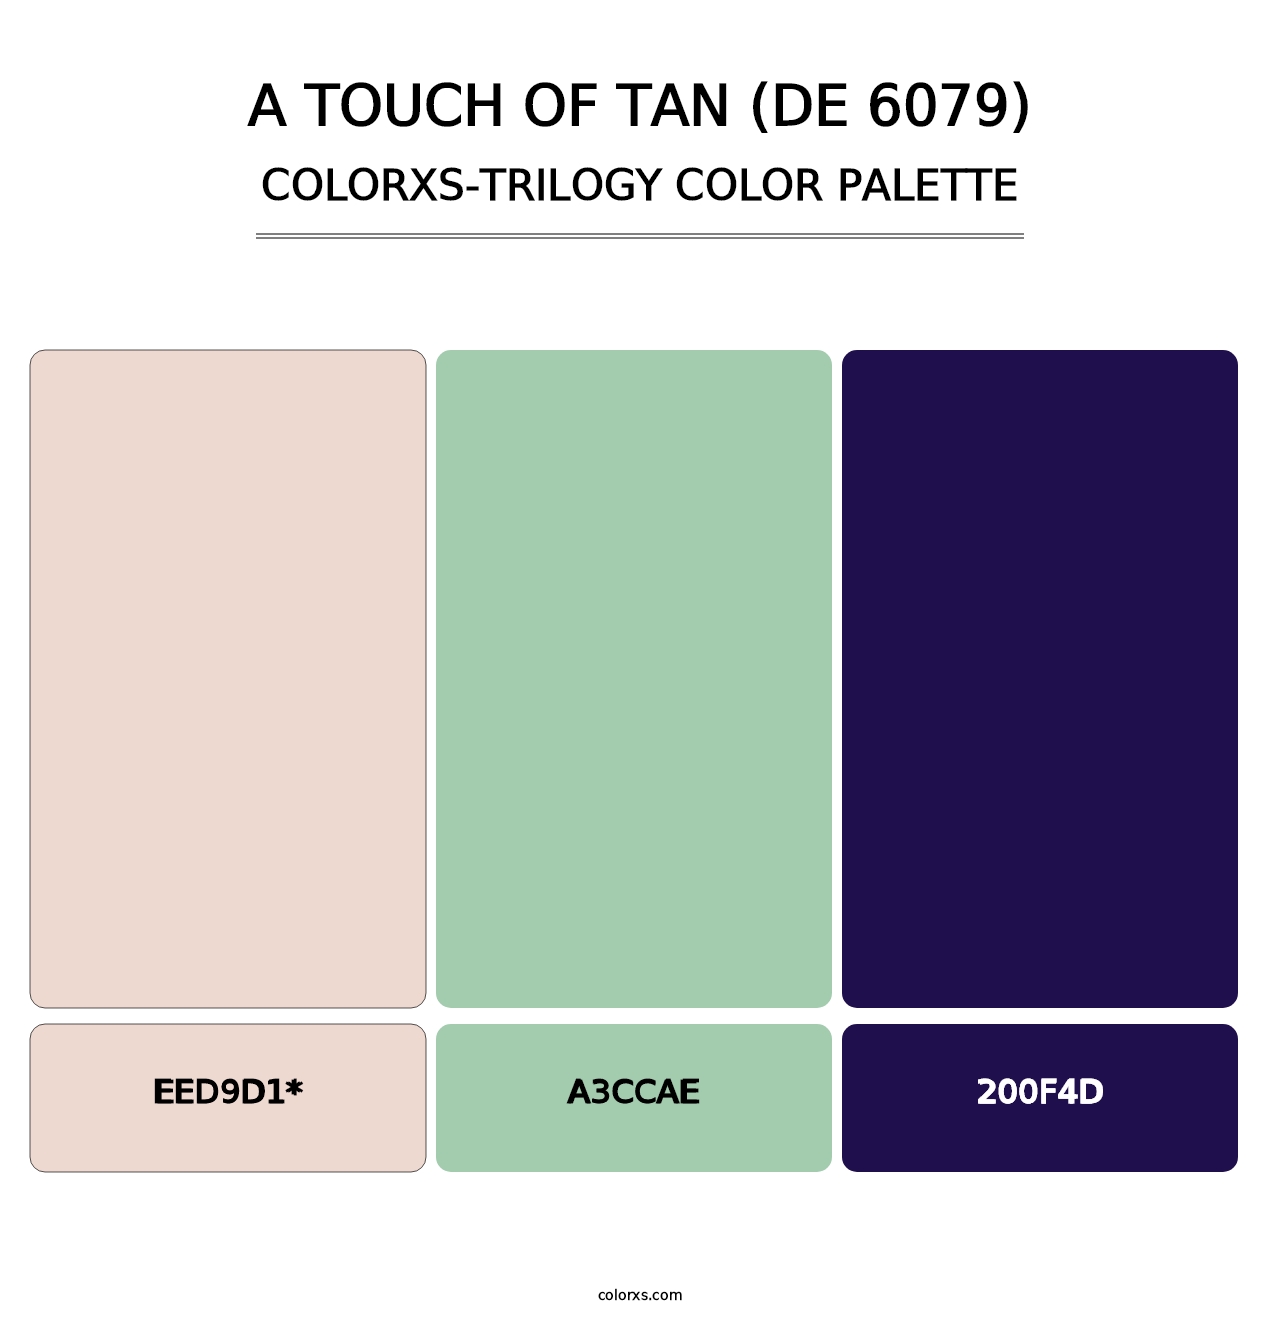 A Touch of Tan (DE 6079) - Colorxs Trilogy Palette